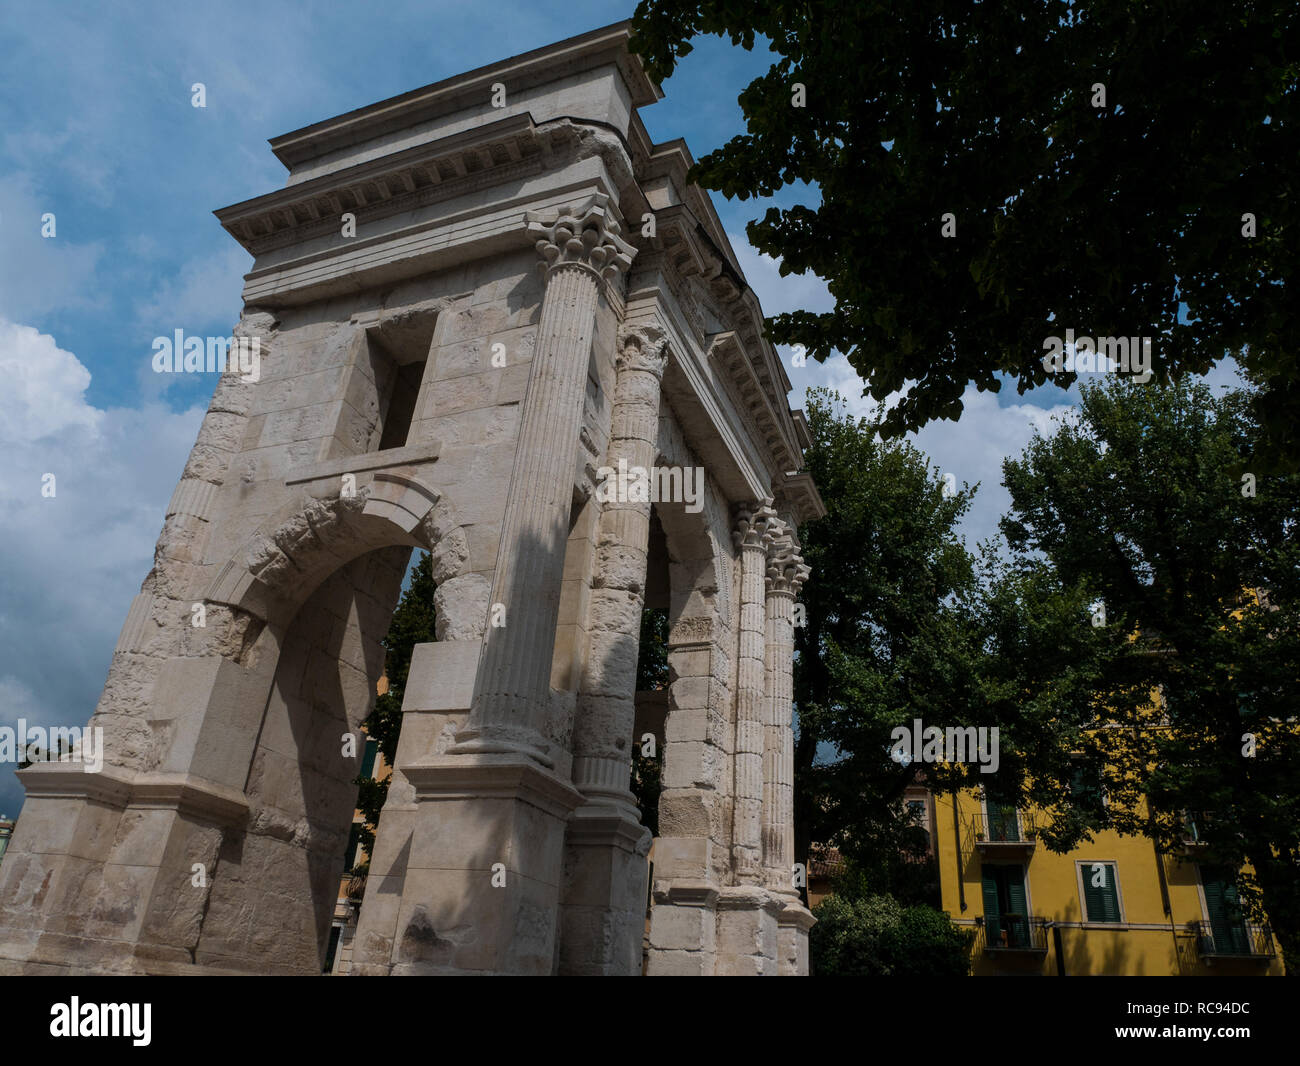 Arco dei gavi es un arco triunfal de la época romana, situada en la ciudad del amor de Verona, destino para todos los turistas en busca de romance Foto de stock